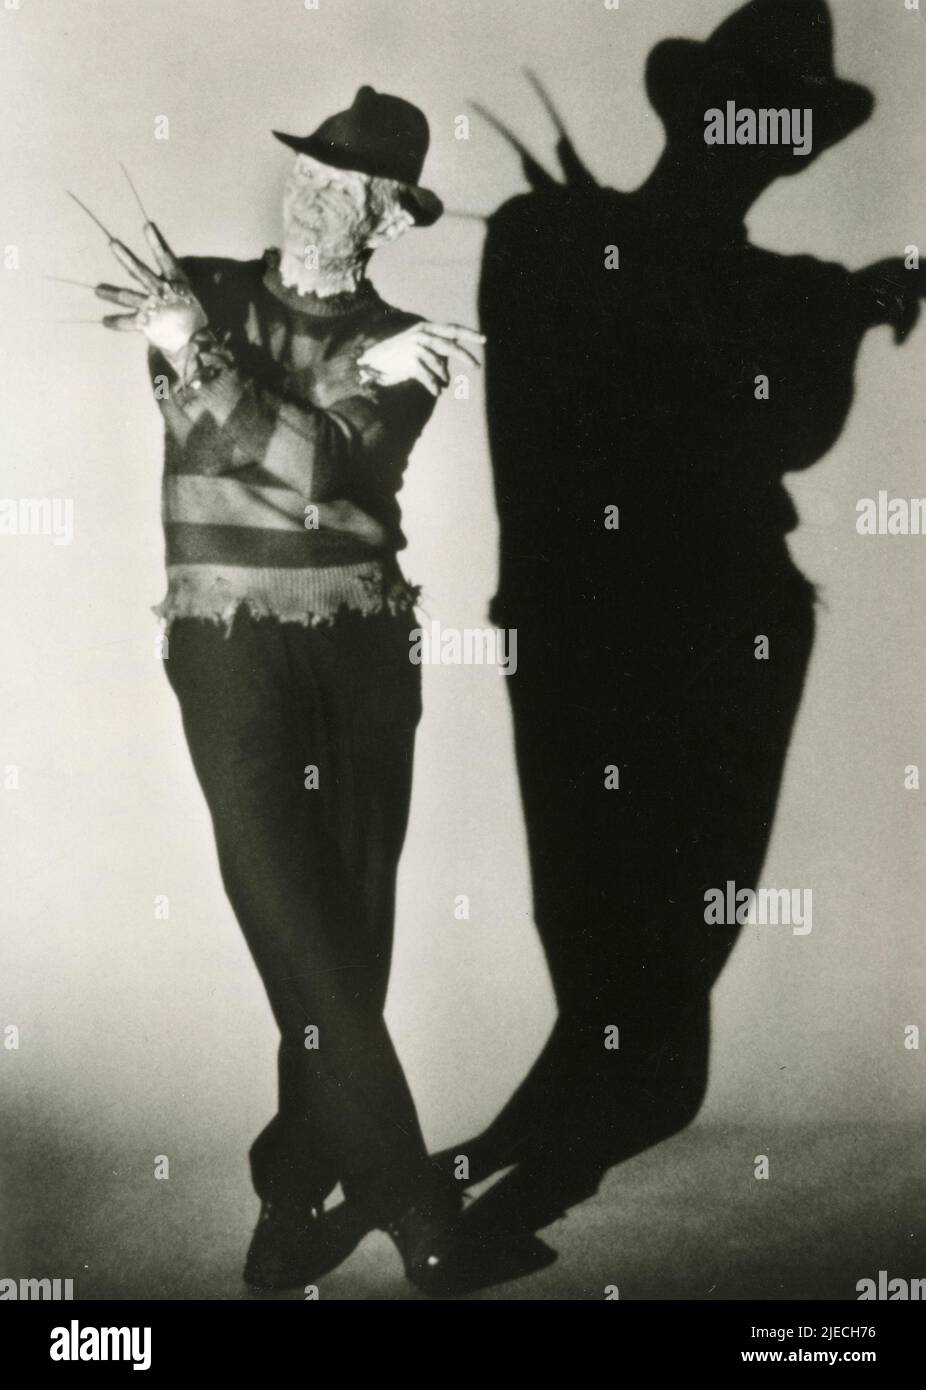 El actor estadounidense Robert Englund en la película Nightmare on Elm Street, USA 1984 Foto de stock